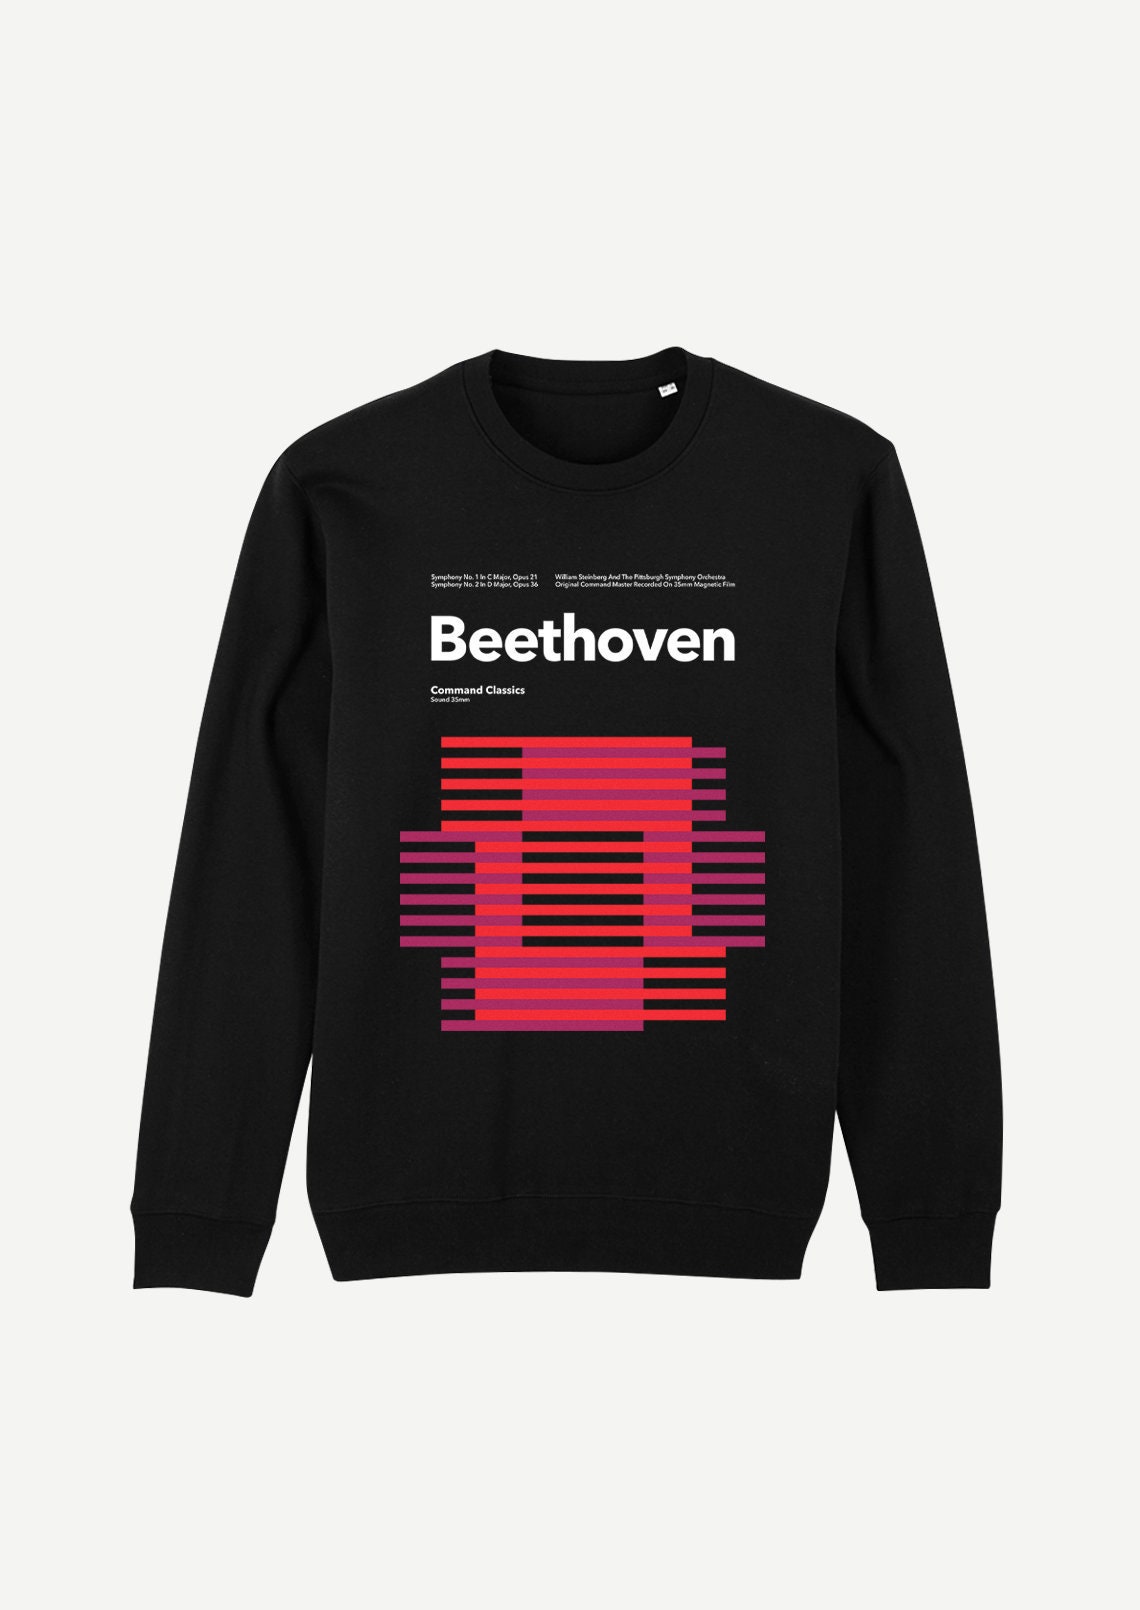 Beethoven Sweatshirt - Etsy